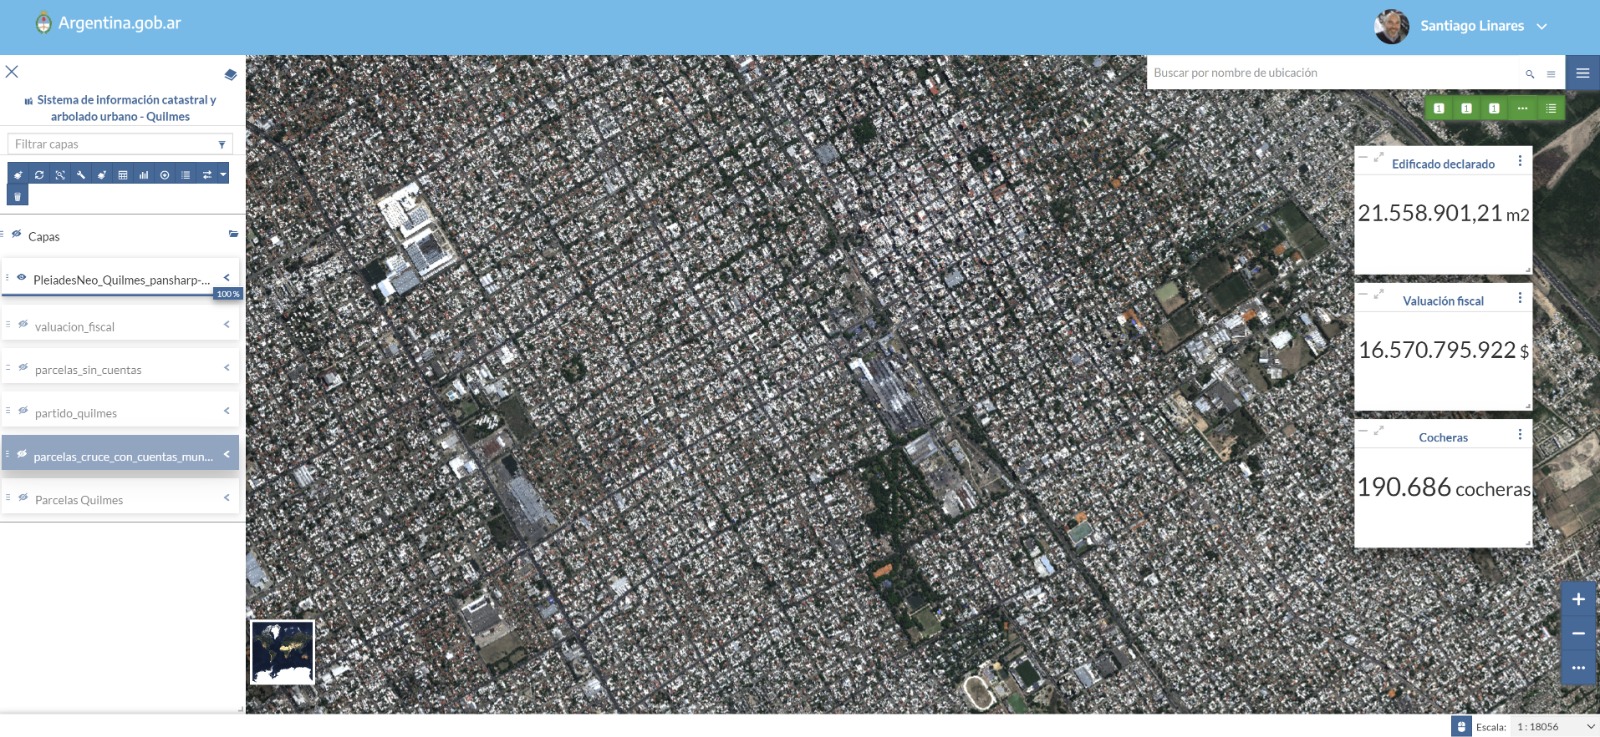 planificación y gestión del catastro y arbolado urbano en el Municipio de Quilmes